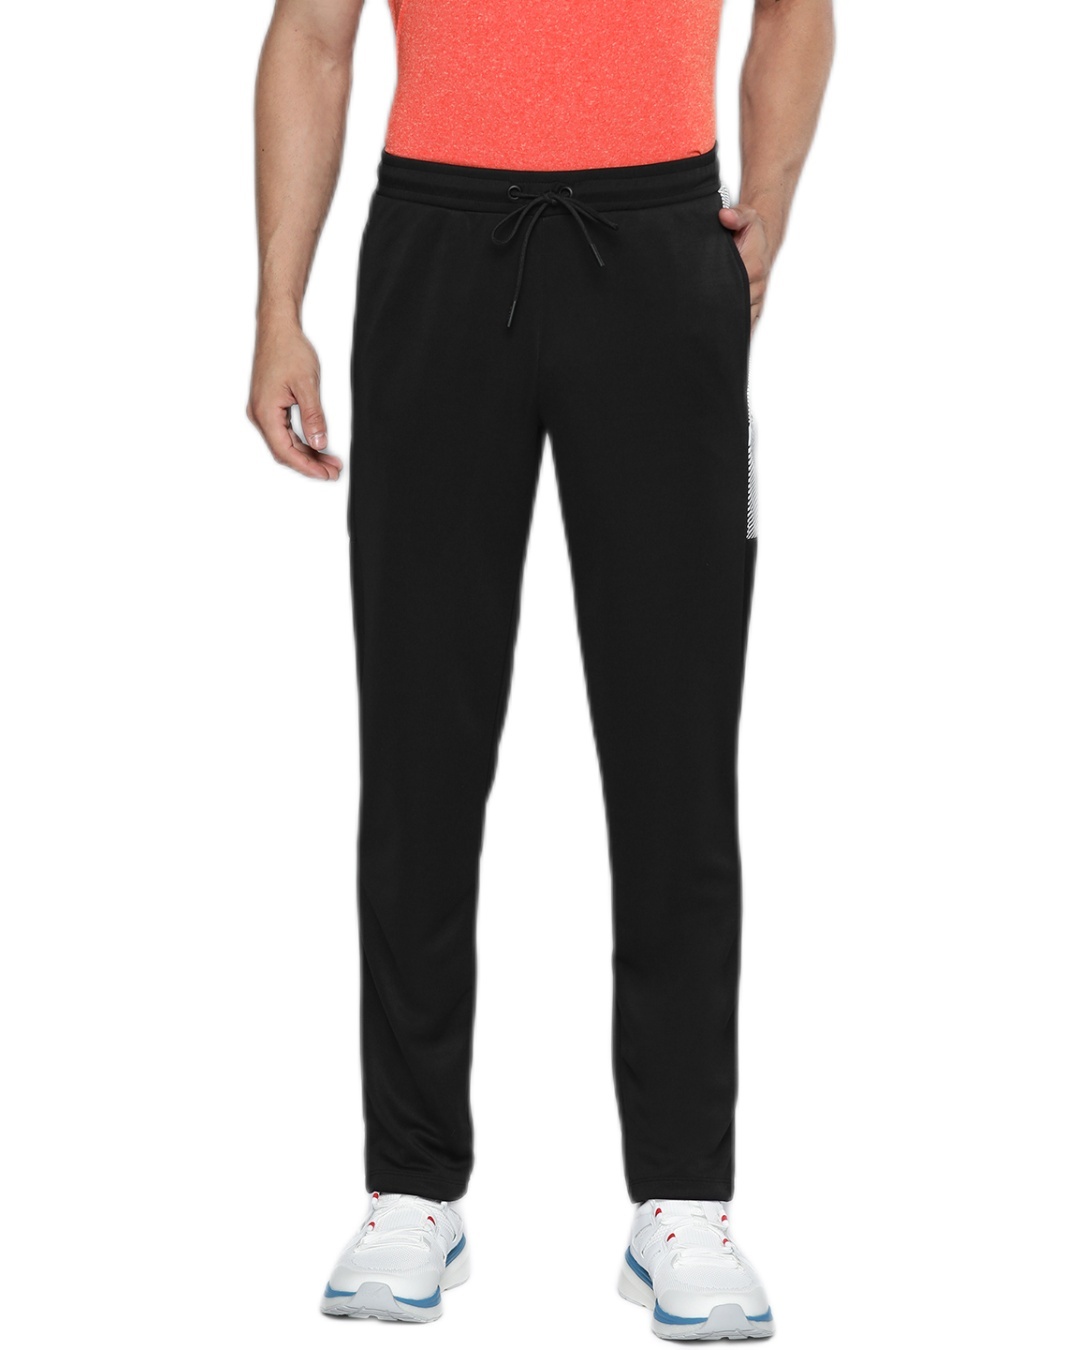 Buy Men's Black Slim Fit Track Pants Online at Bewakoof